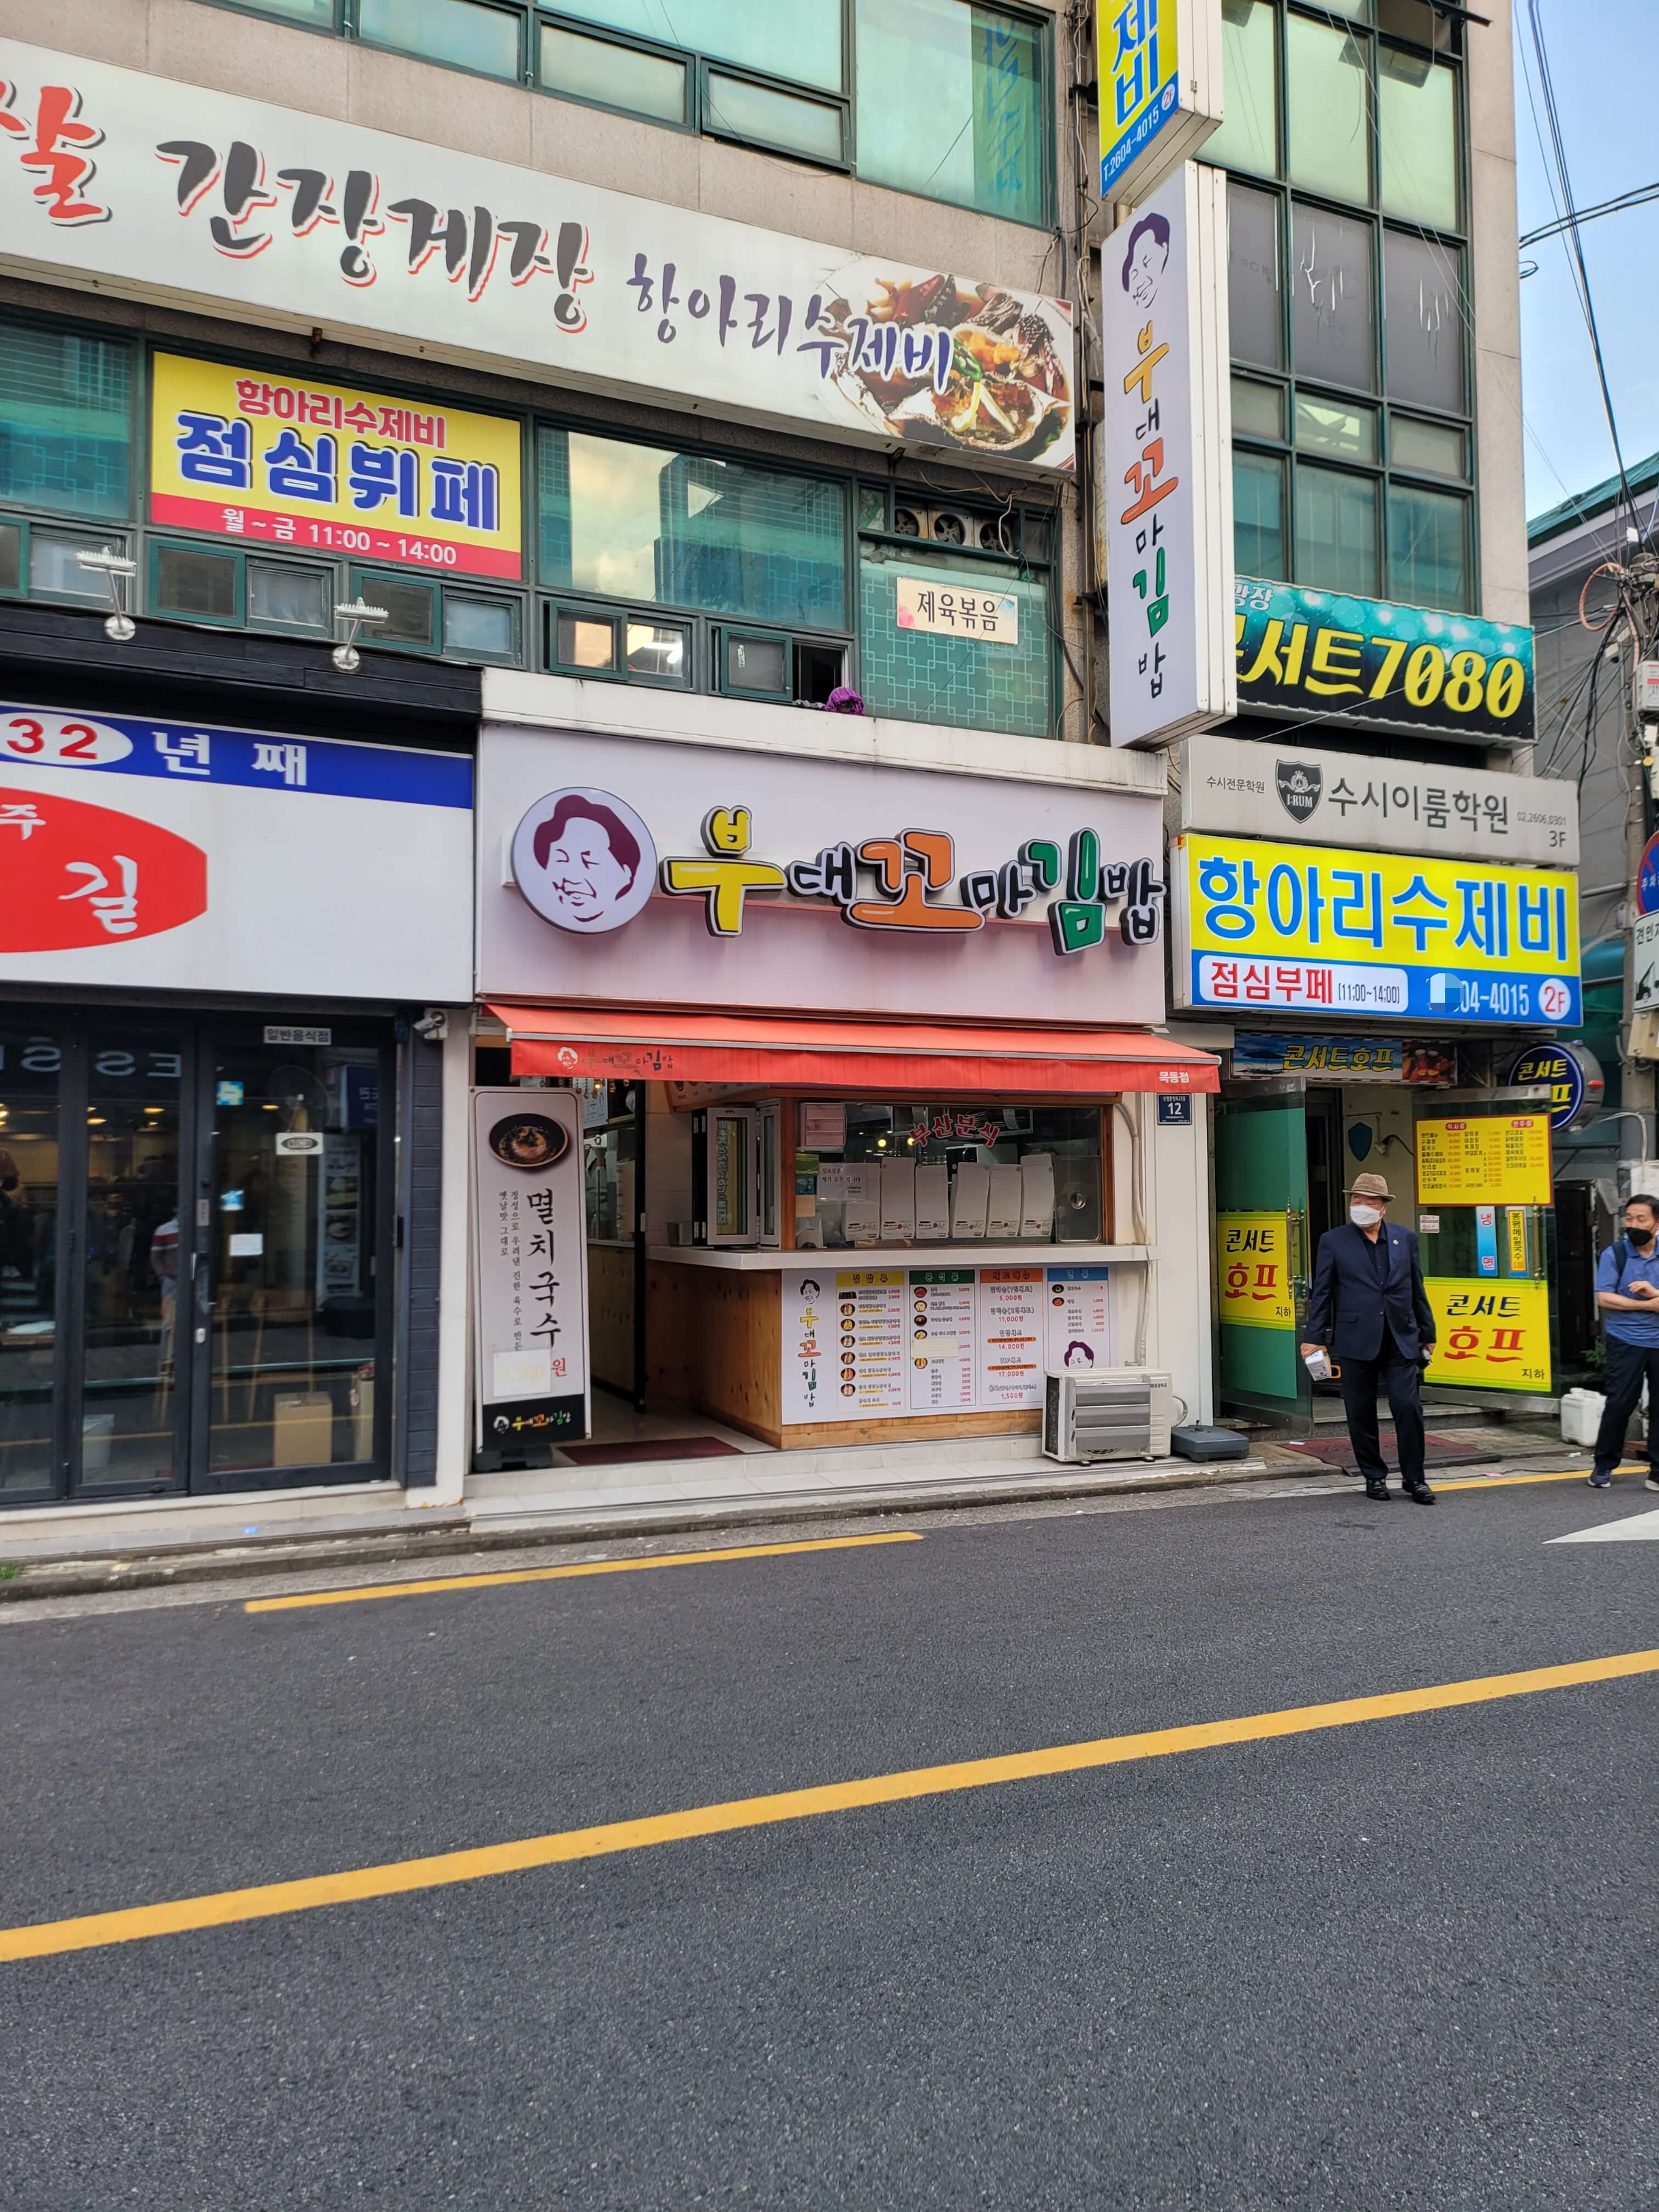 부대꼬마김밥 가게 앞 사진입니다.